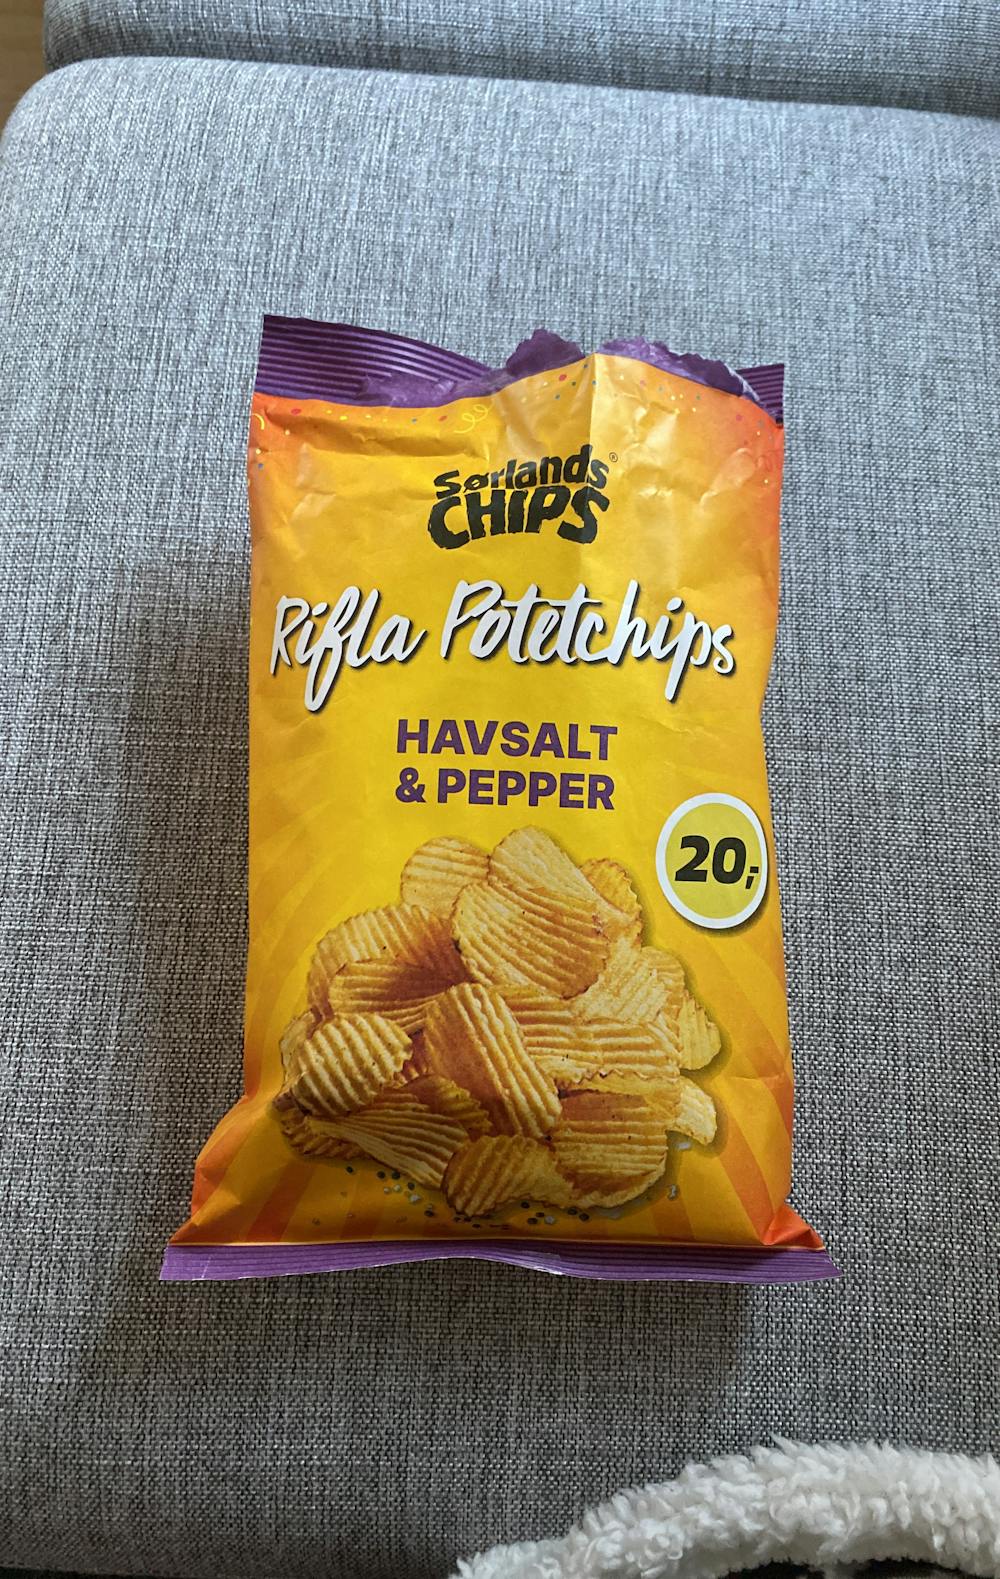 Rifla potetchips, halvsalt & pepper, Sørlands chips